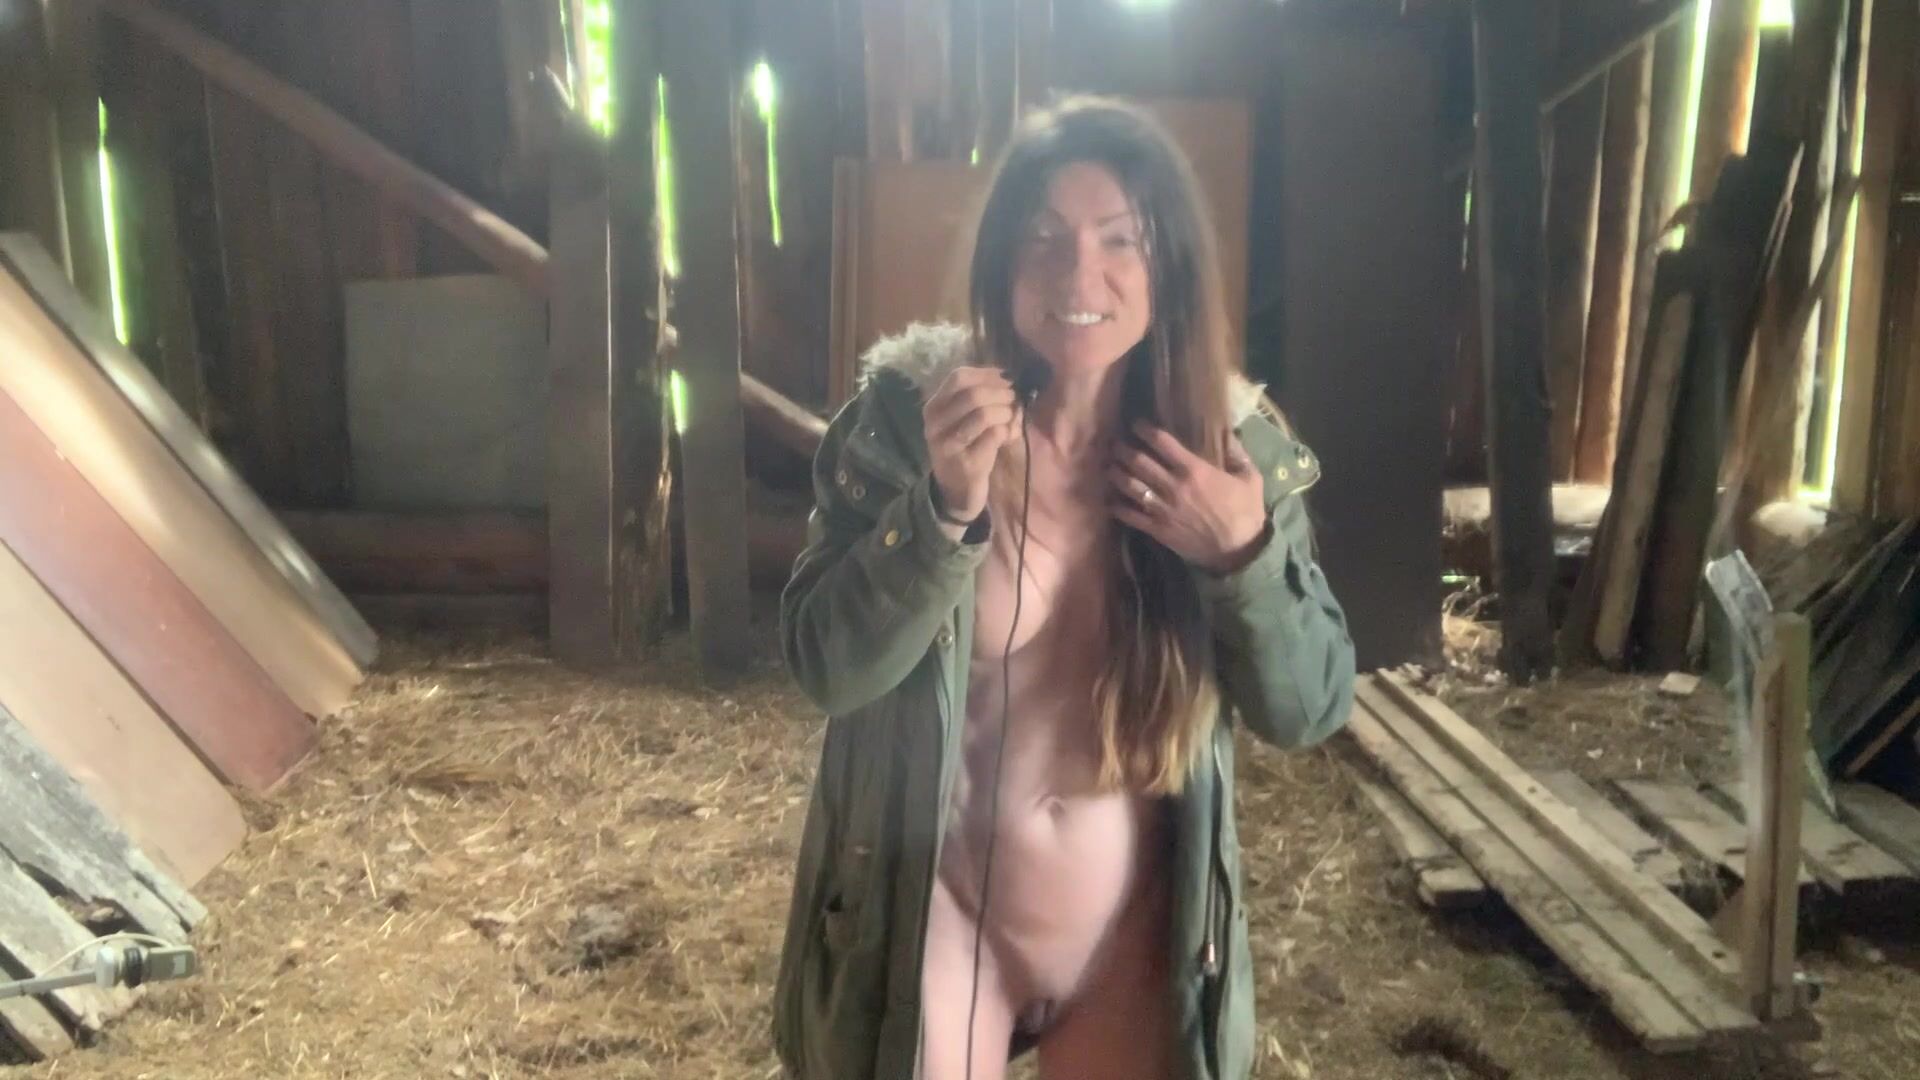 The farm nude